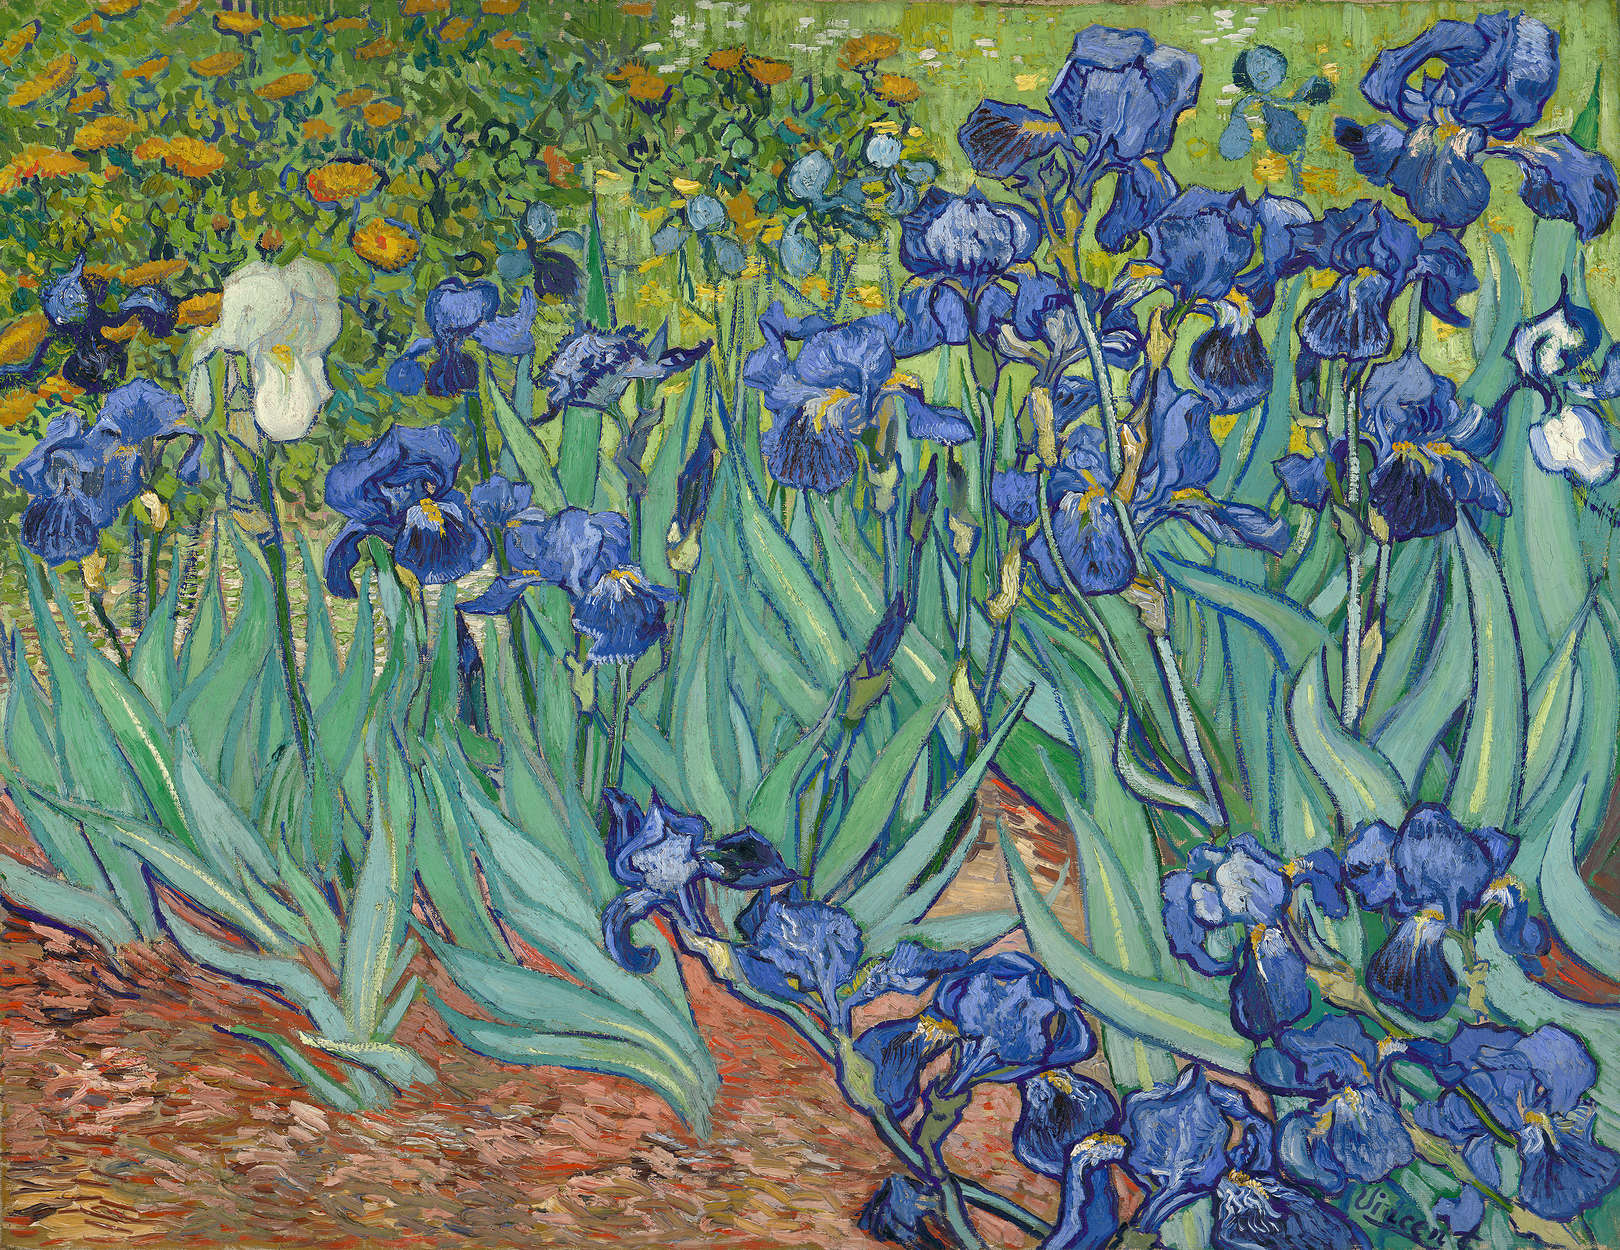             Fototapete "Schwertlilien" von Vincent van Gogh
        